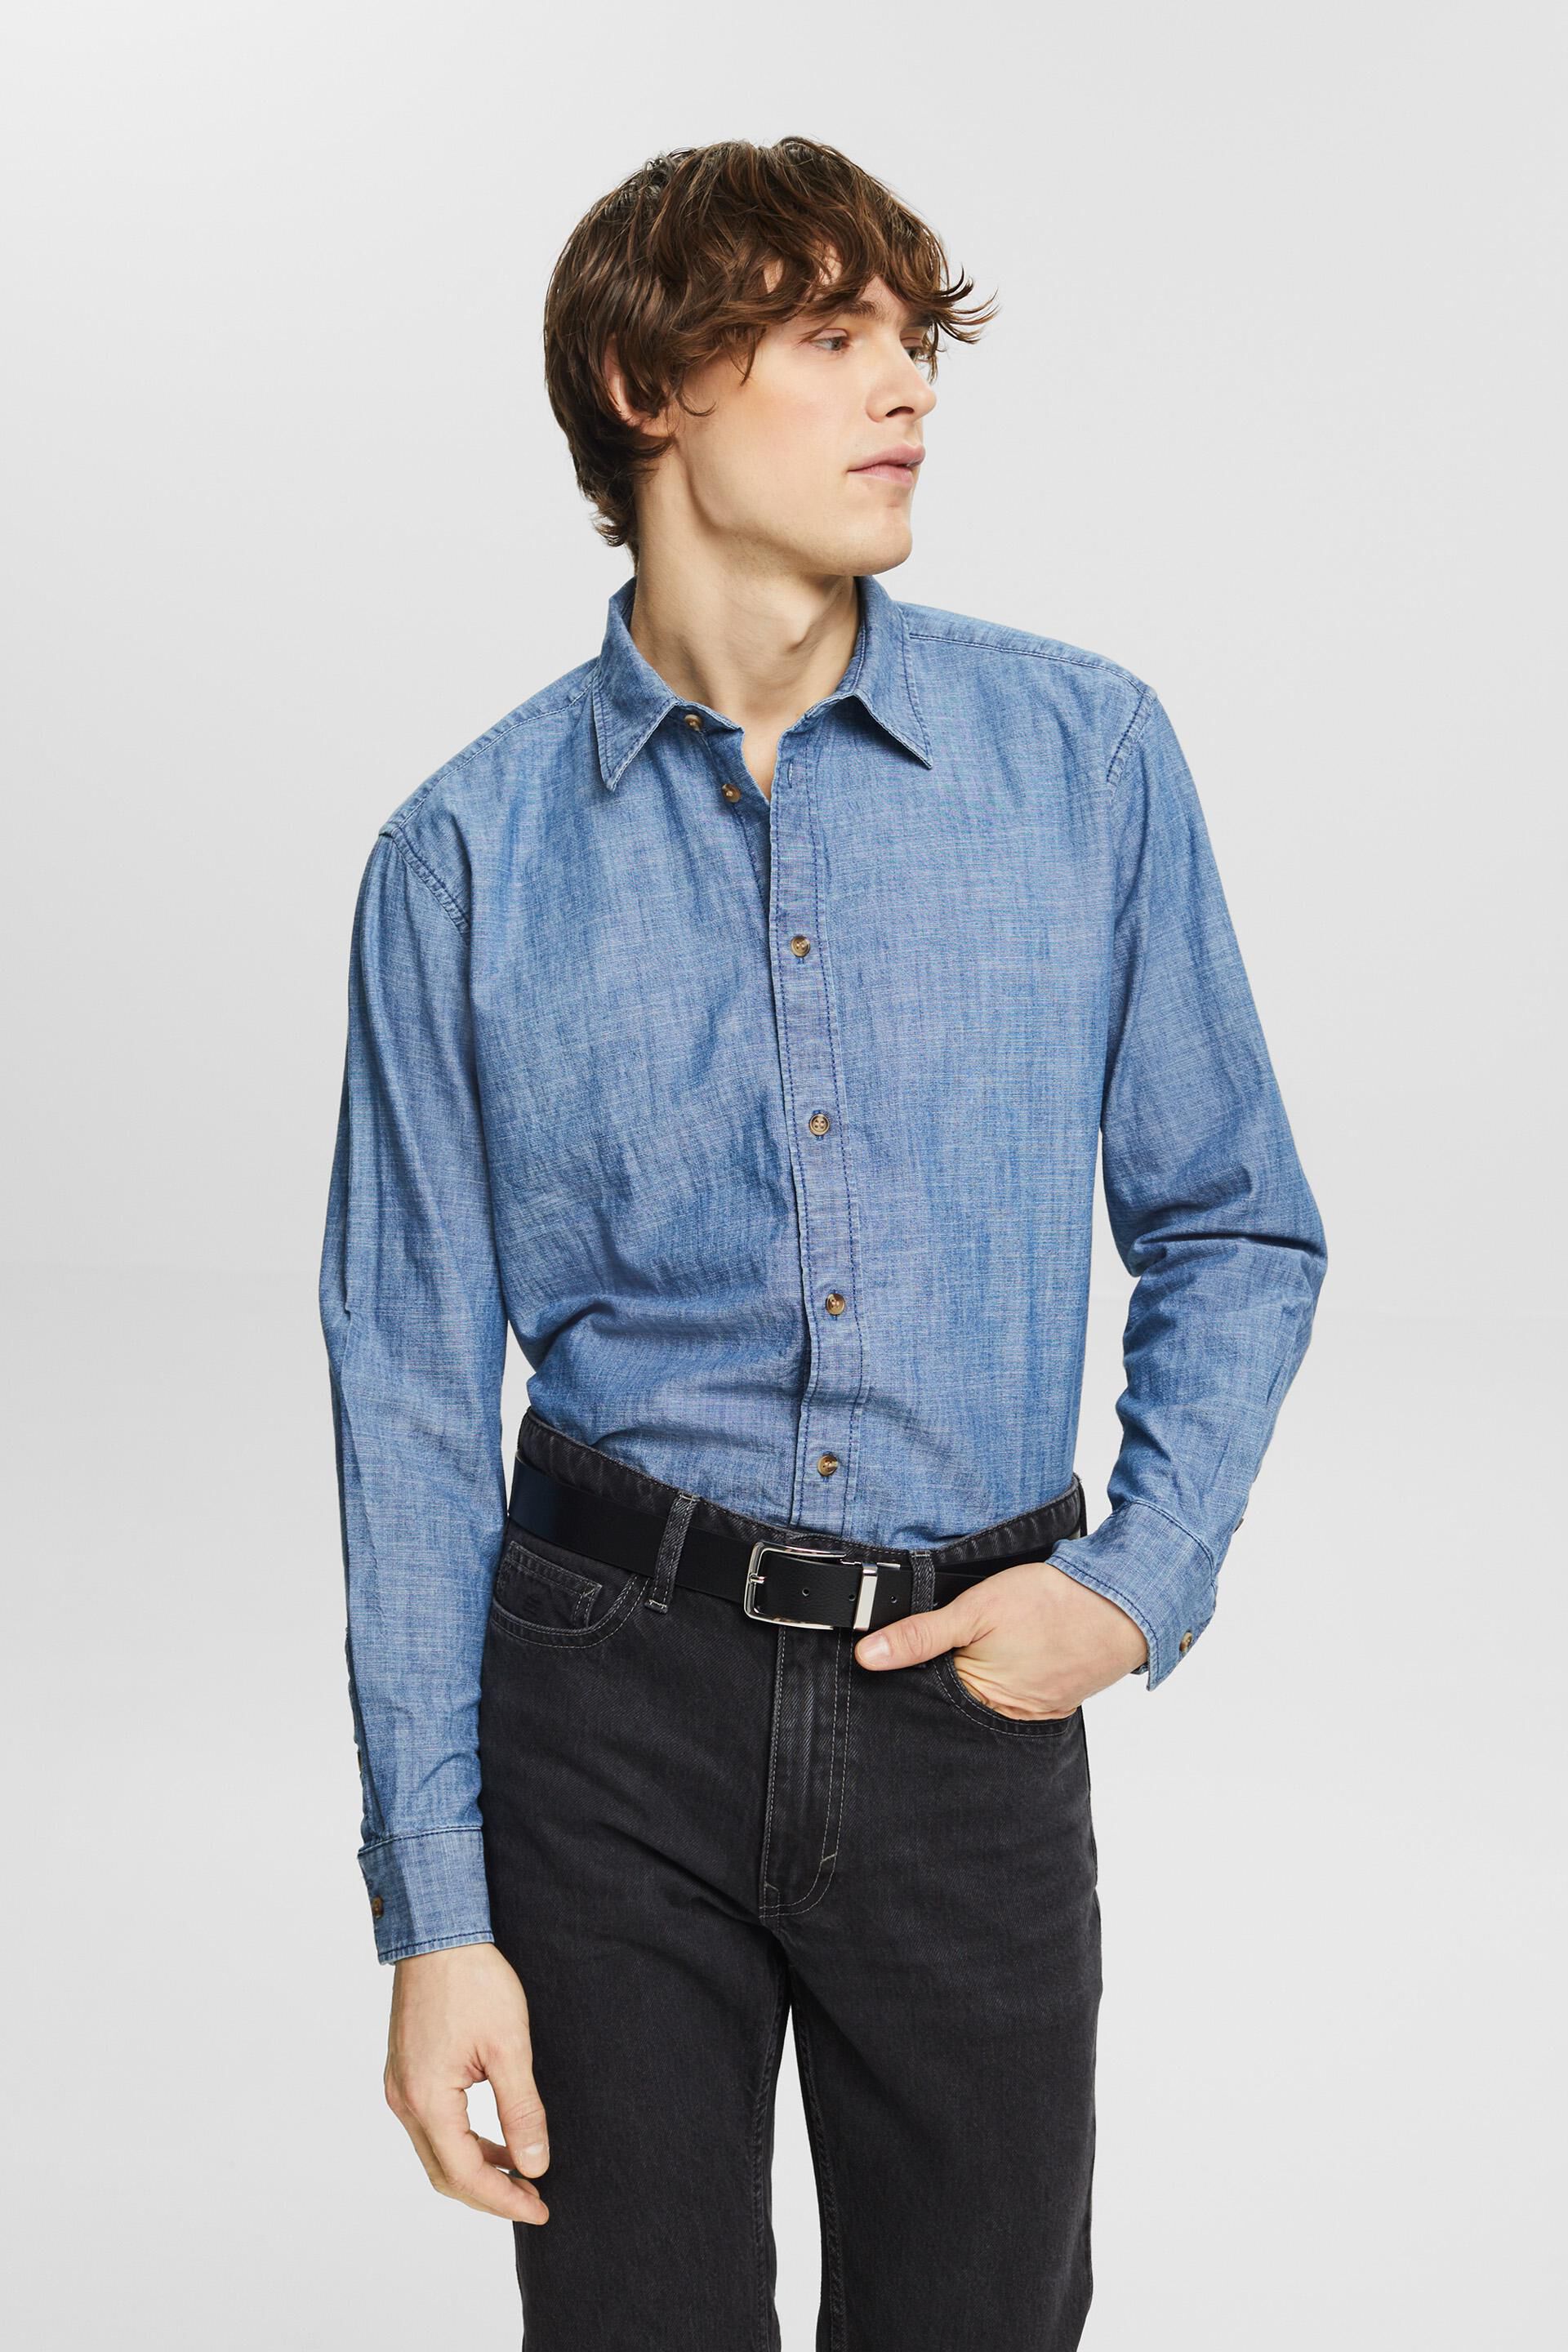 Short Sleeve Button Down Shirt | Men's Denim Shirts | Lee UK